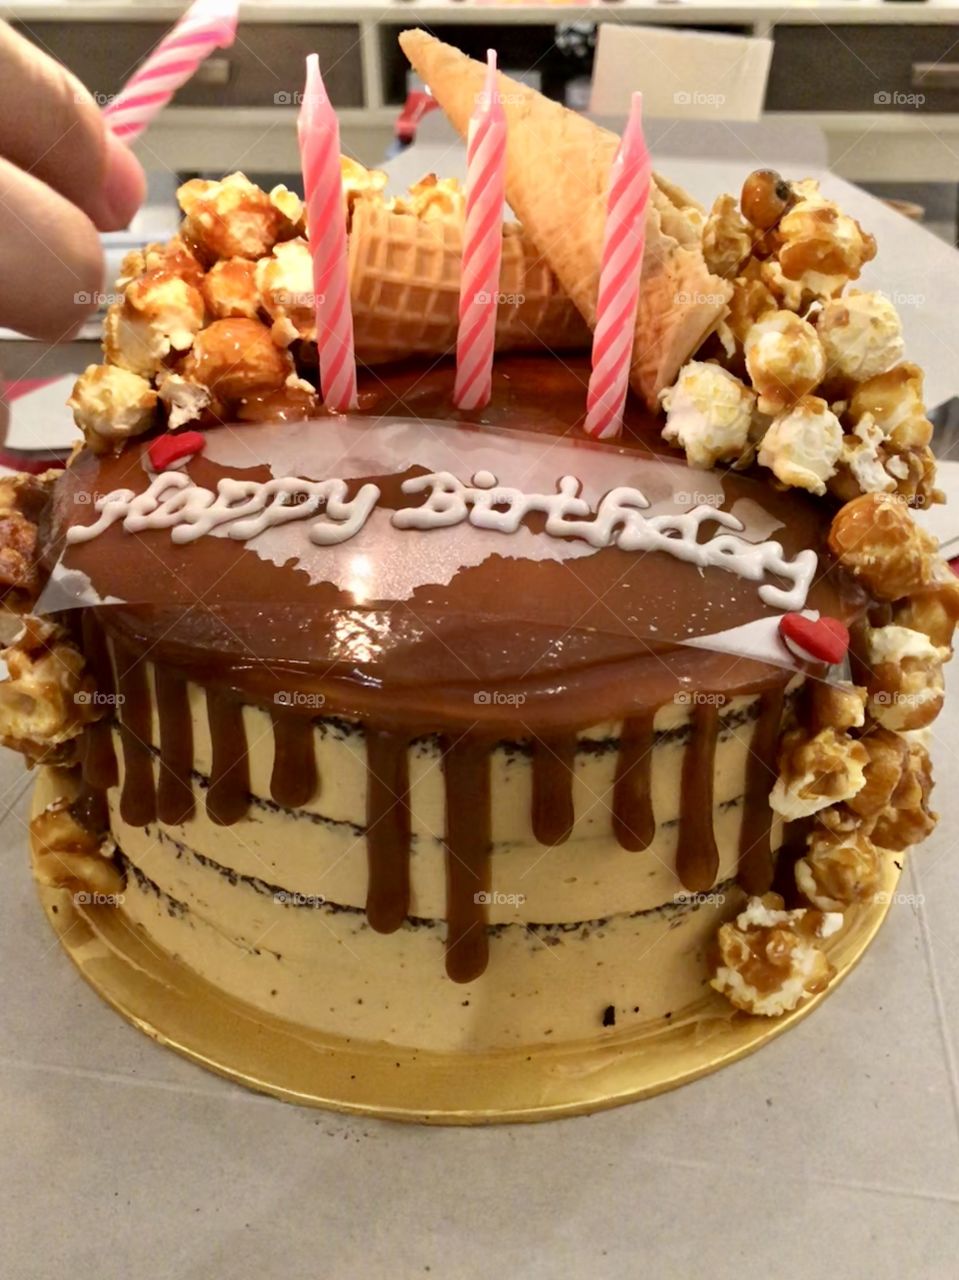 Popcorn birthday cake 